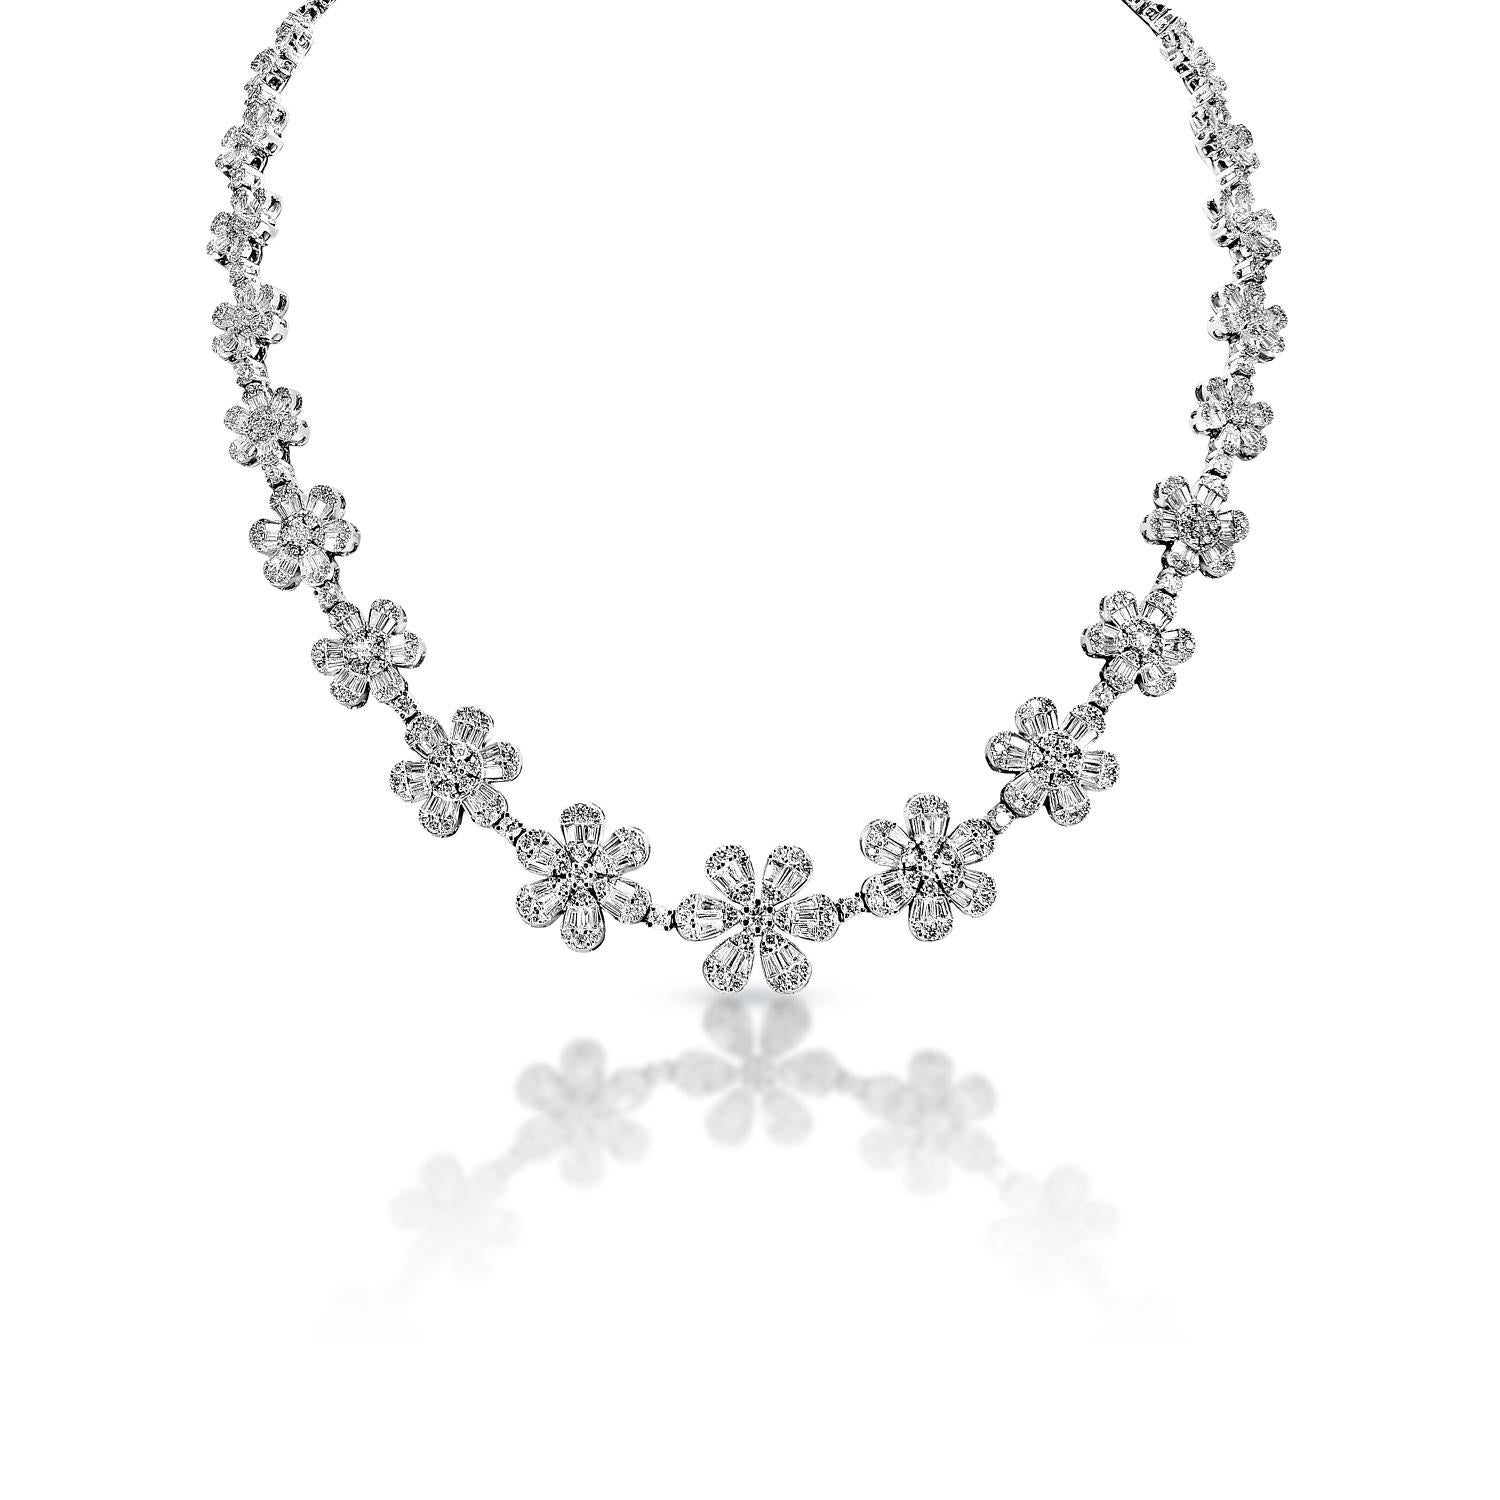 Diamant-Halskette:

Karatgewicht: 13.06 Karat
Stil: Runder Brillantschliff
Ketten: 14k Weißgold